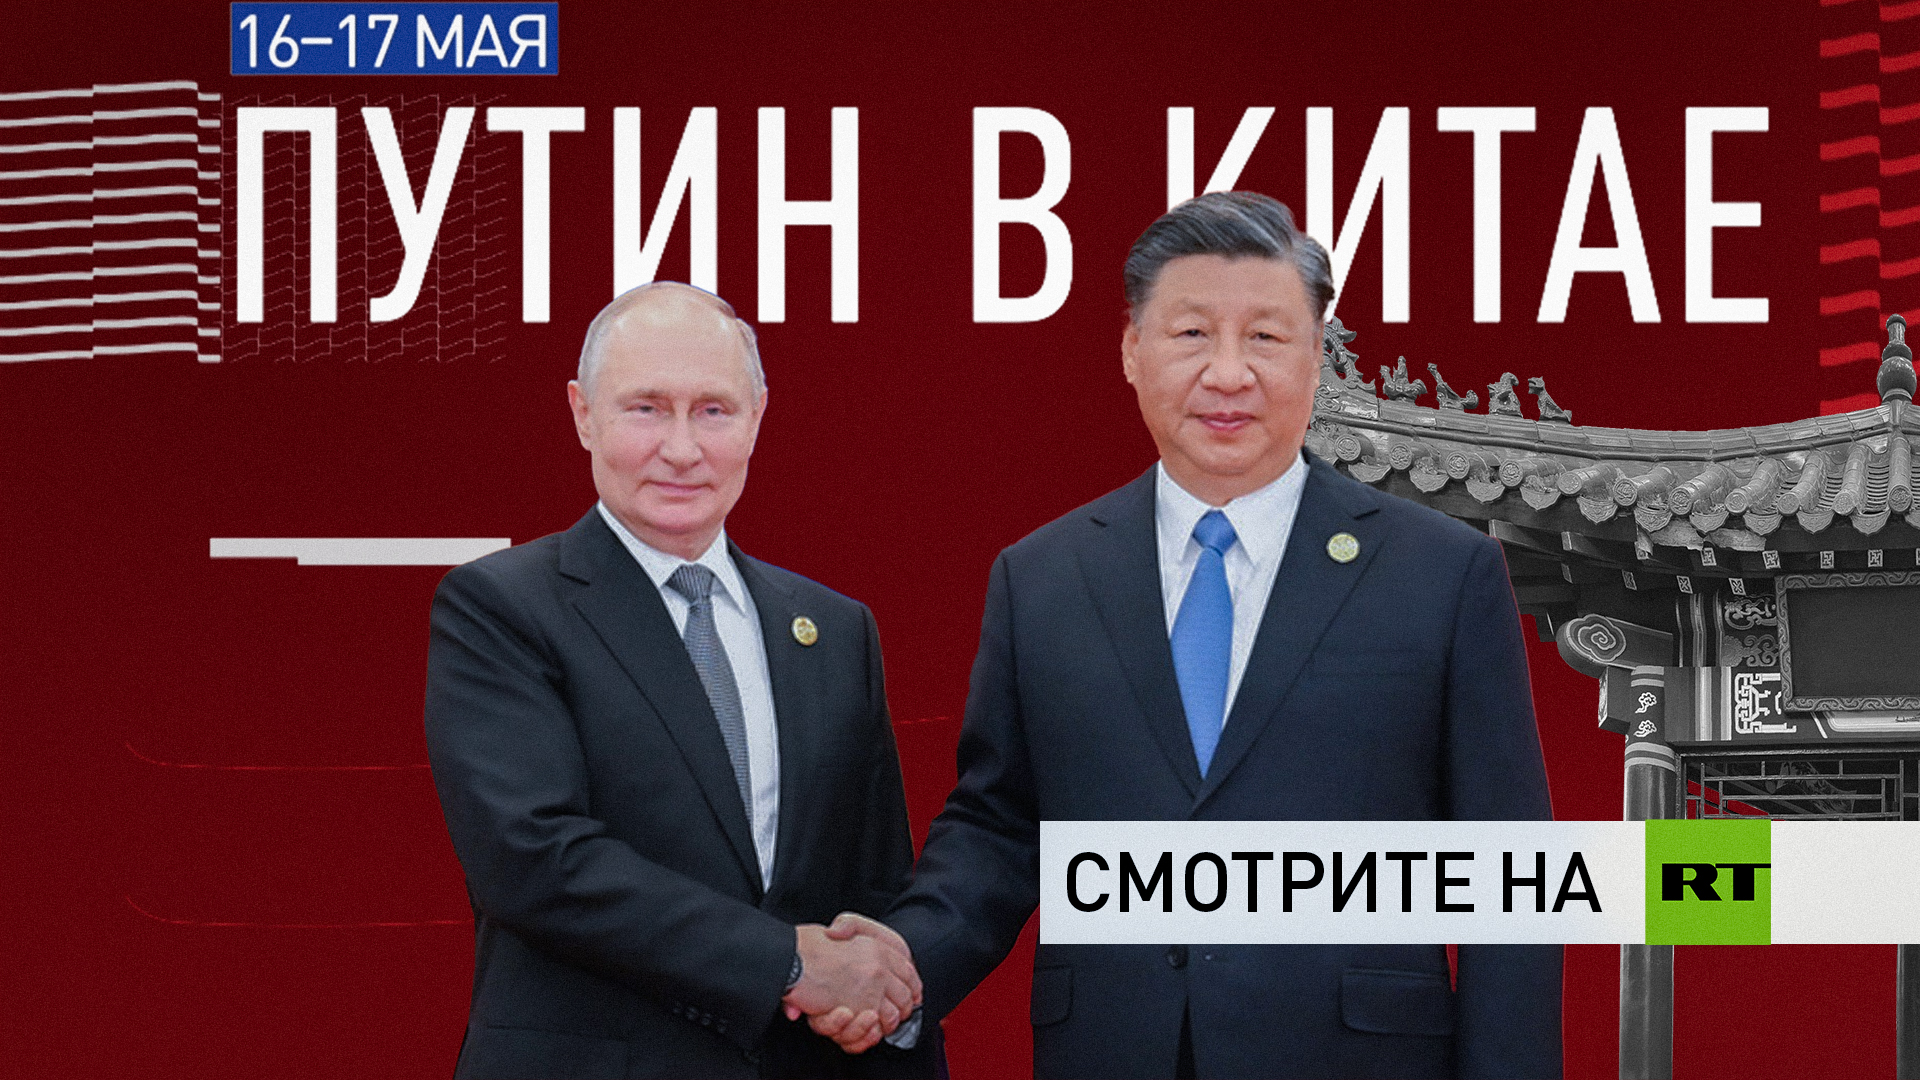 Владимир Путин посетит Китай с государственным визитом 16—17 мая: смотрите на RT